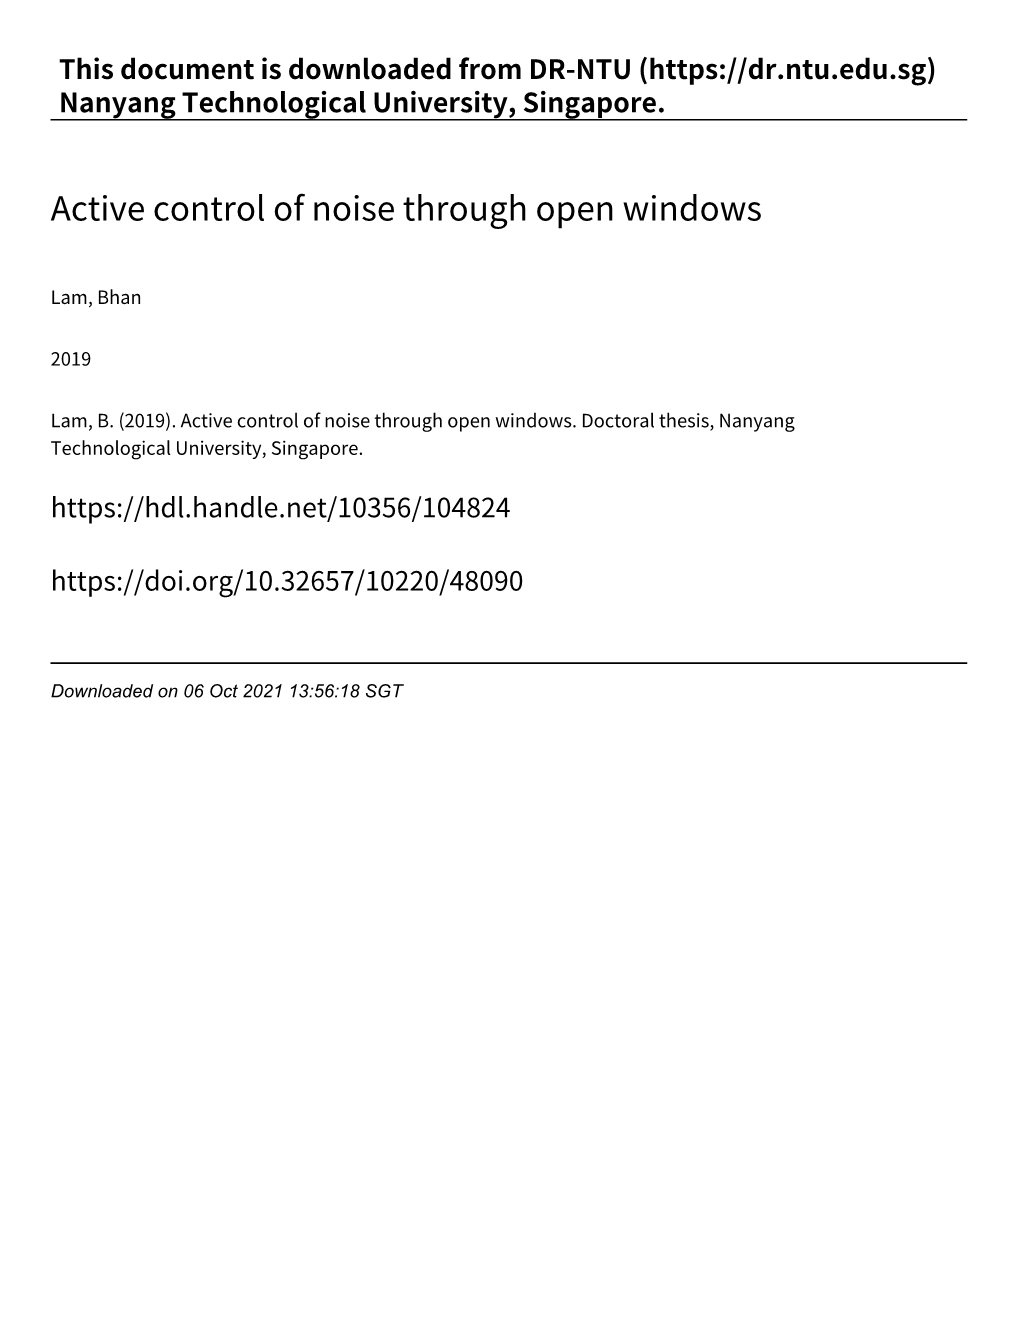 Active Control of Noise Through Open Windows